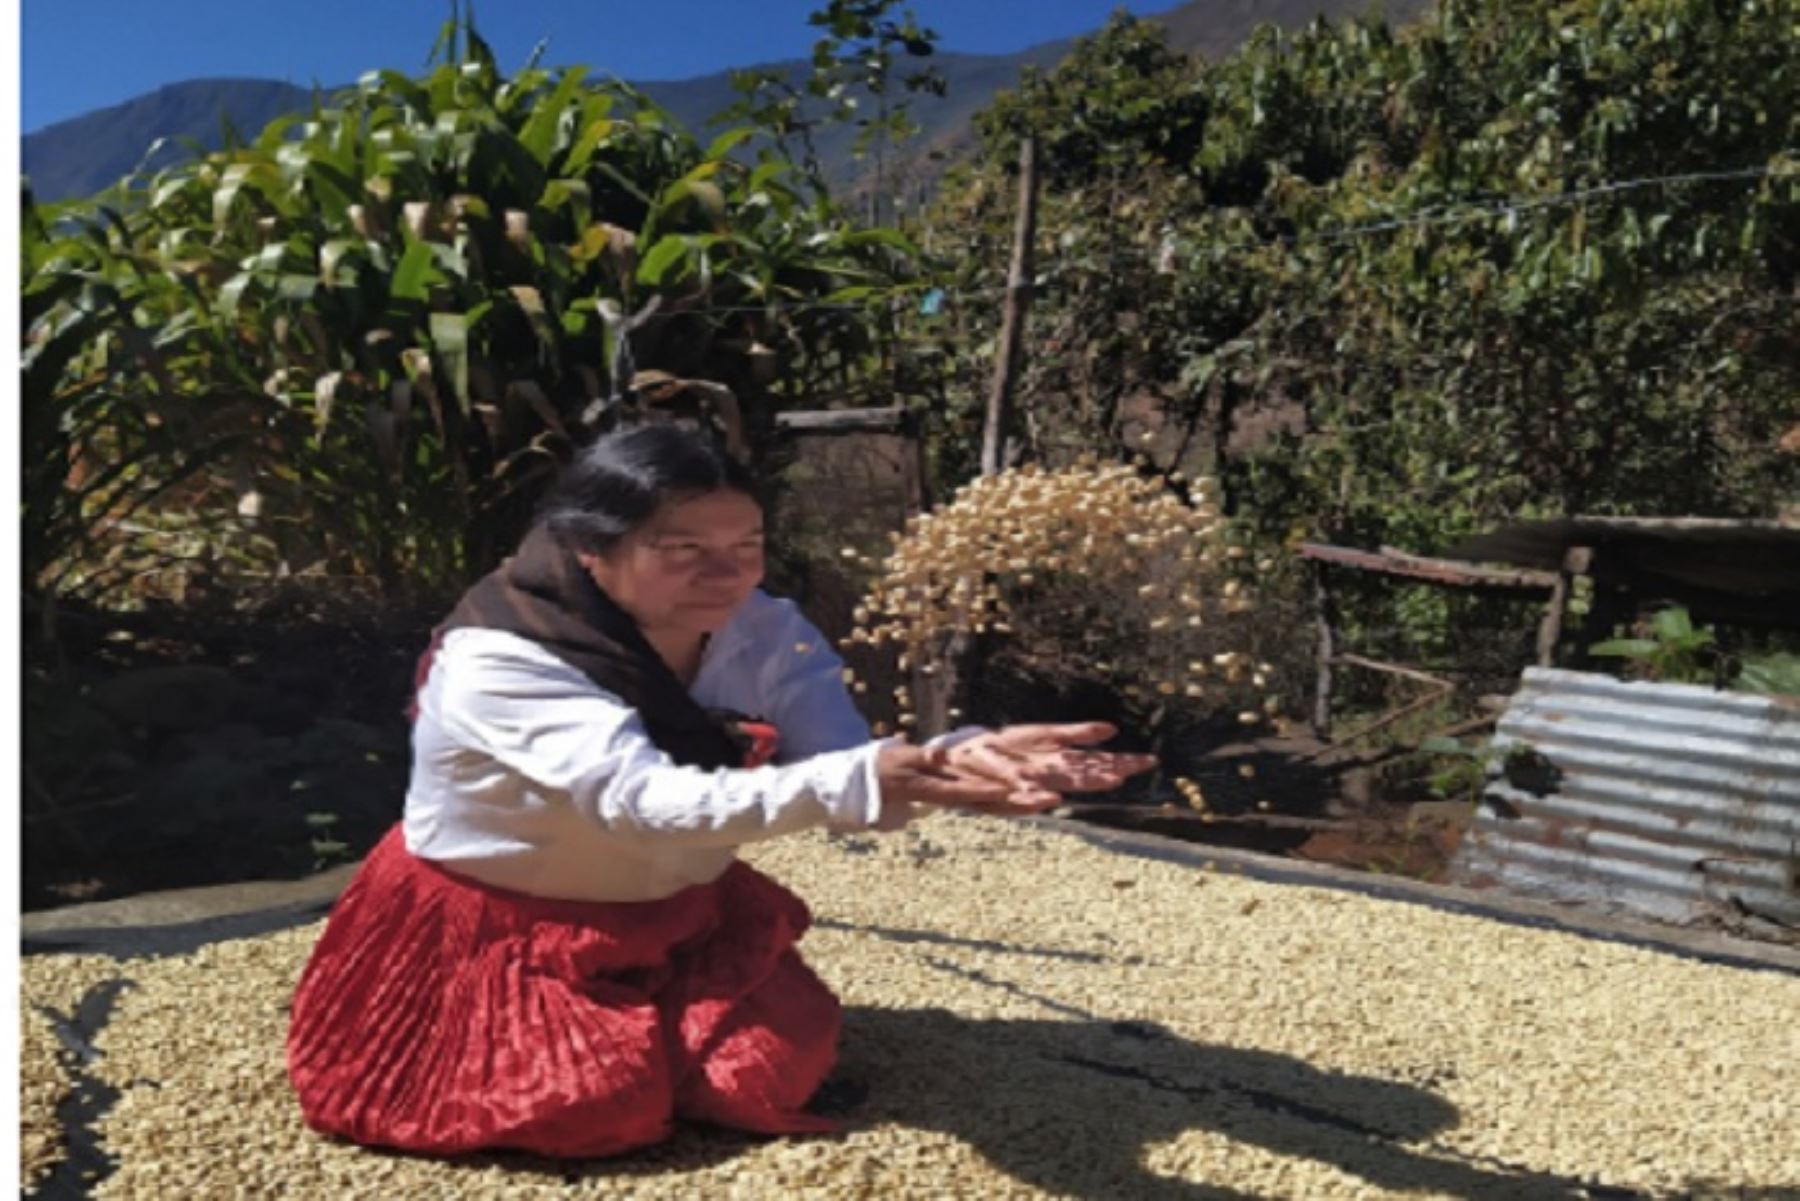 La provincia cusqueña de La Convención es la nueva ruta del café en el circuito turístico Choquequirao, Santa Teresa y Machu Picchu, acceso a la selva amazónica del Cusco.